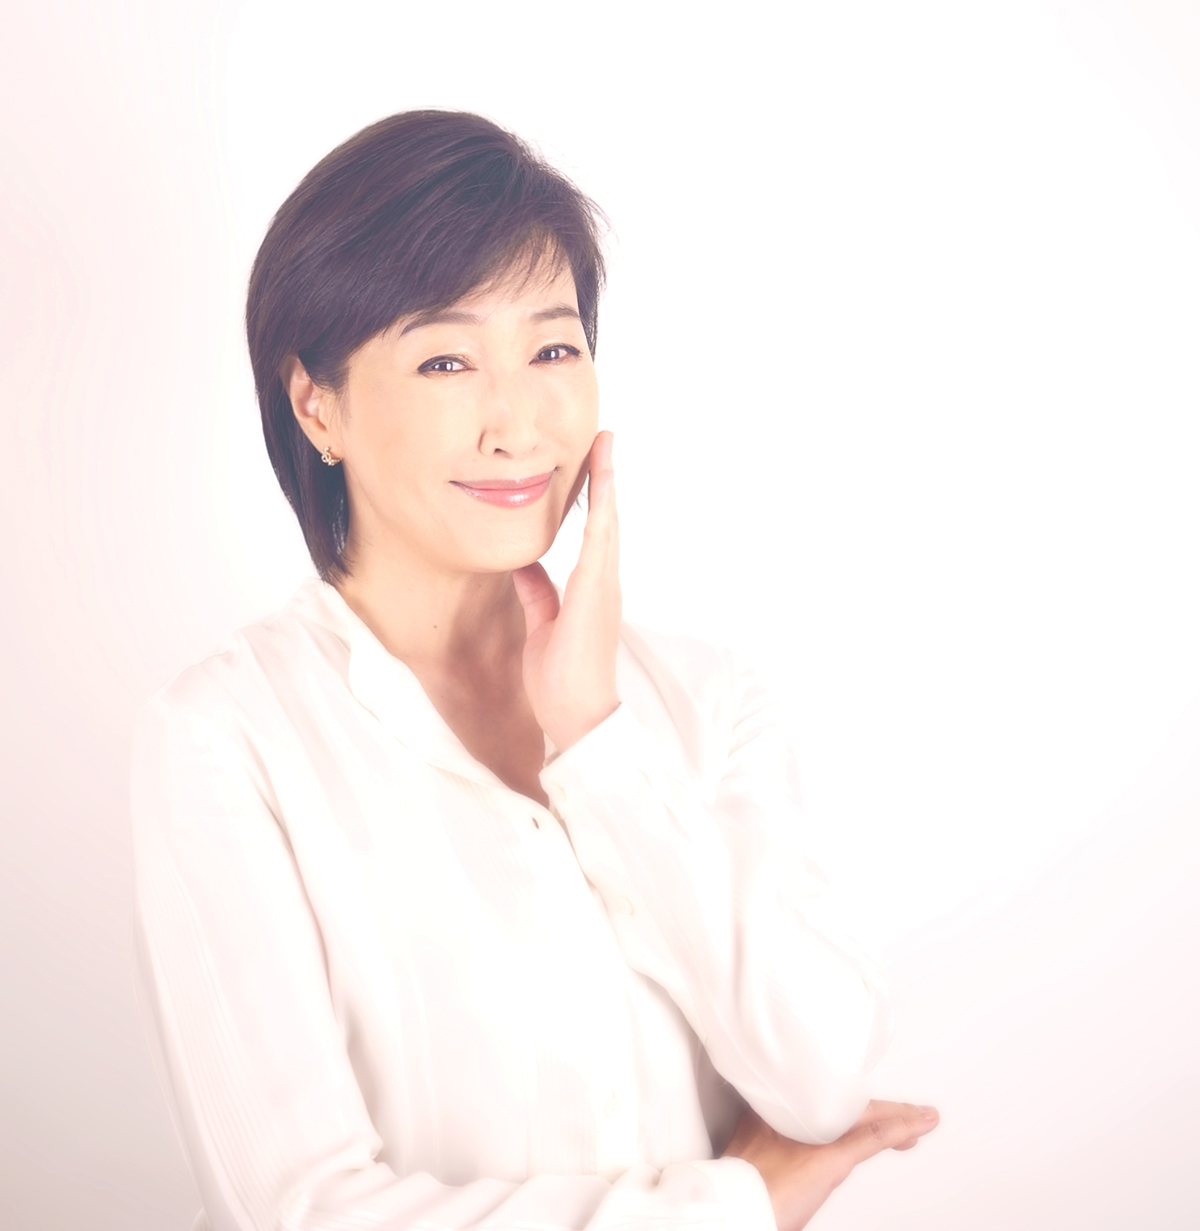 女優 高島礼子が愛用するコラーゲンサプリが気軽に試せる ミキズコラーゲントライアルセット を提供開始 株式会社トリプルサンのプレスリリース